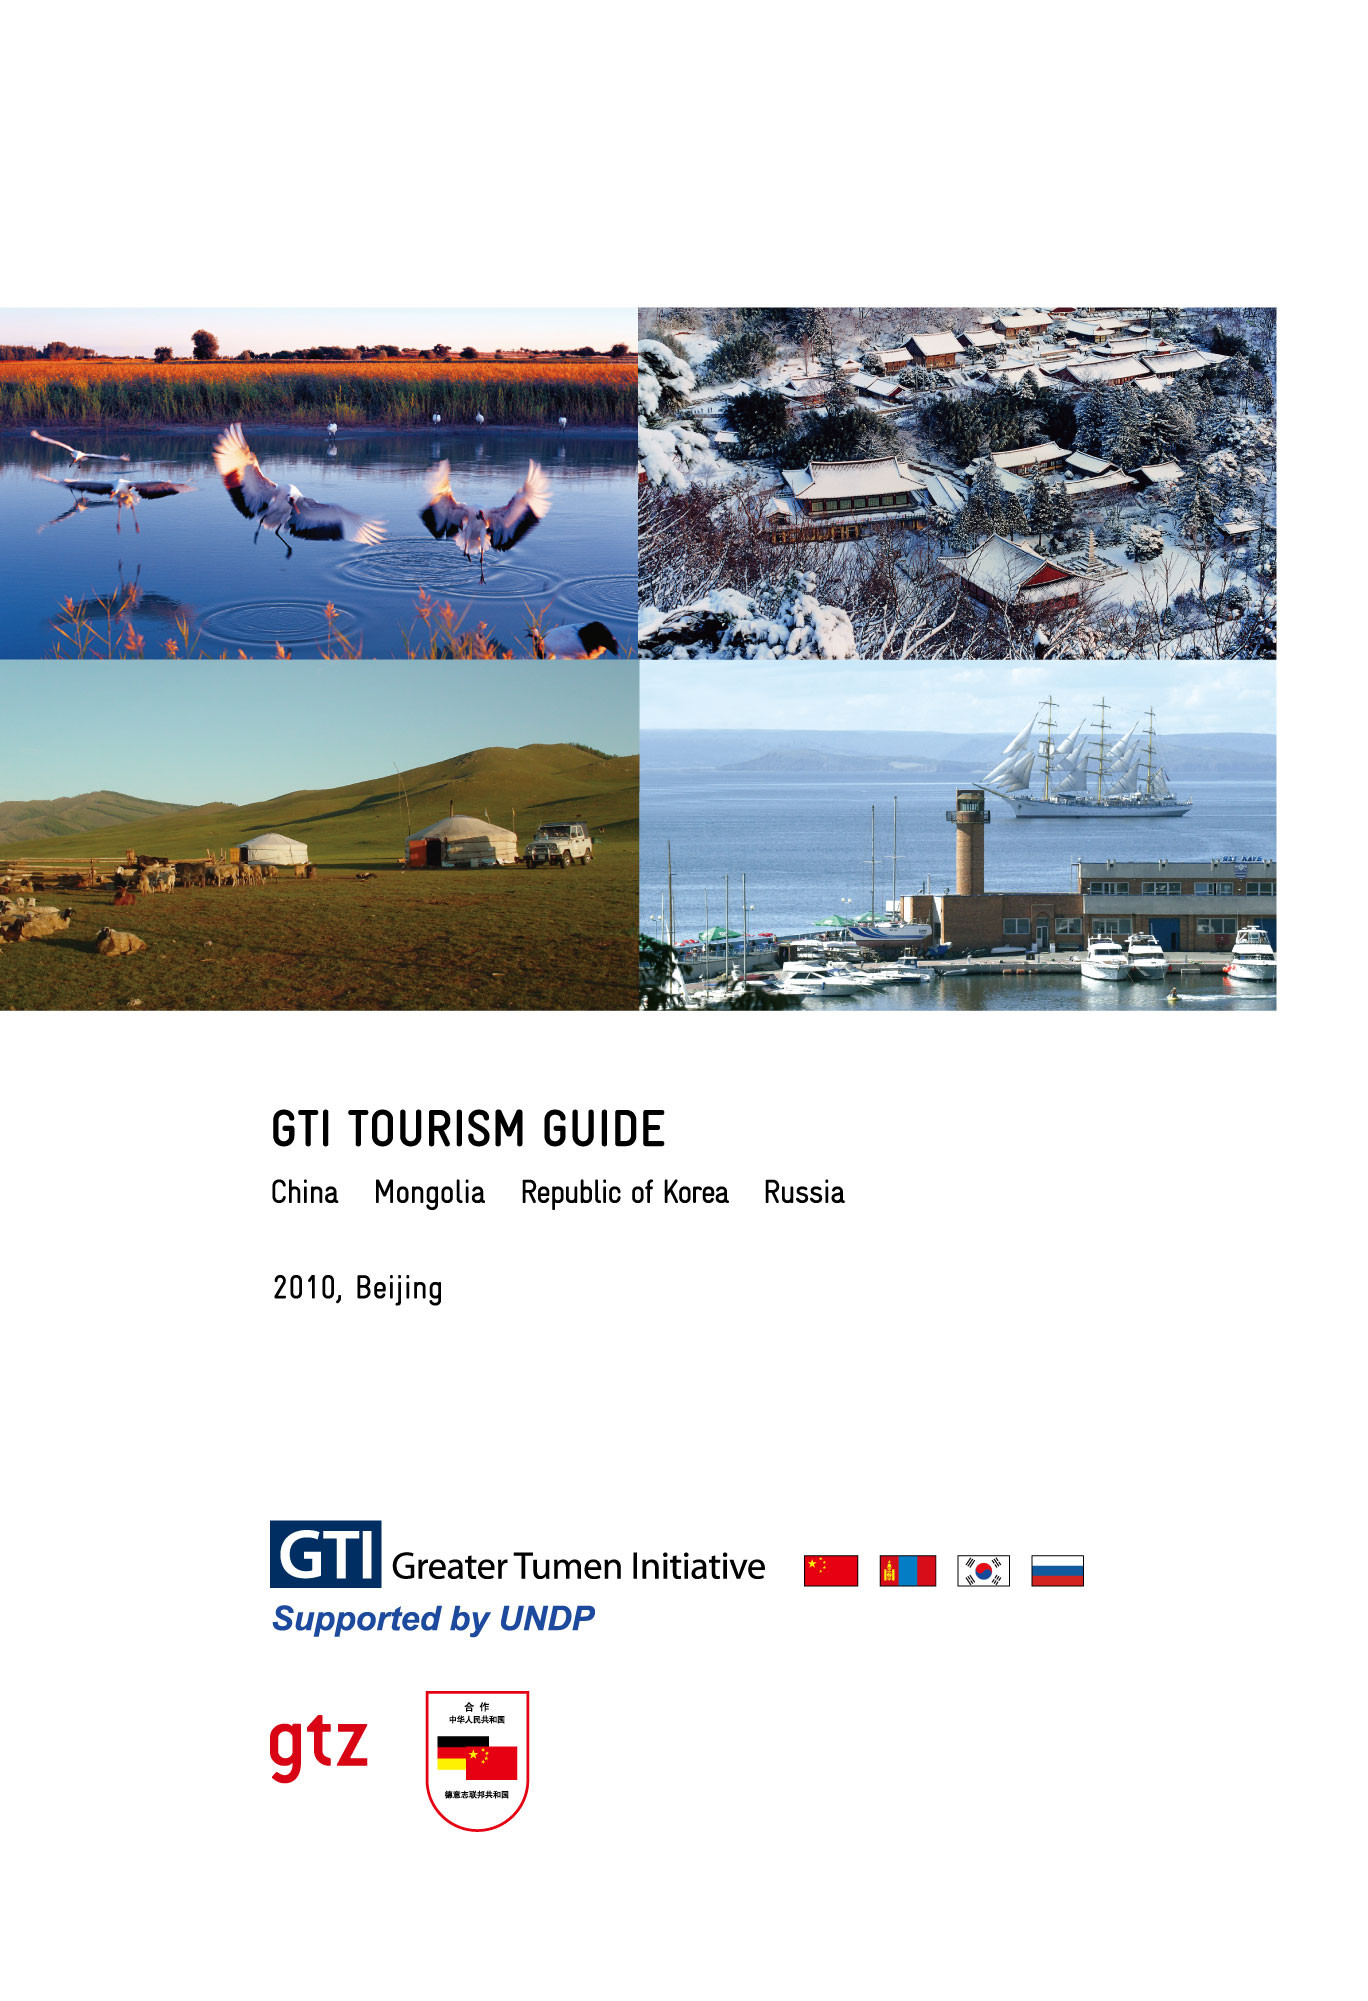 Tourism Guide 2010